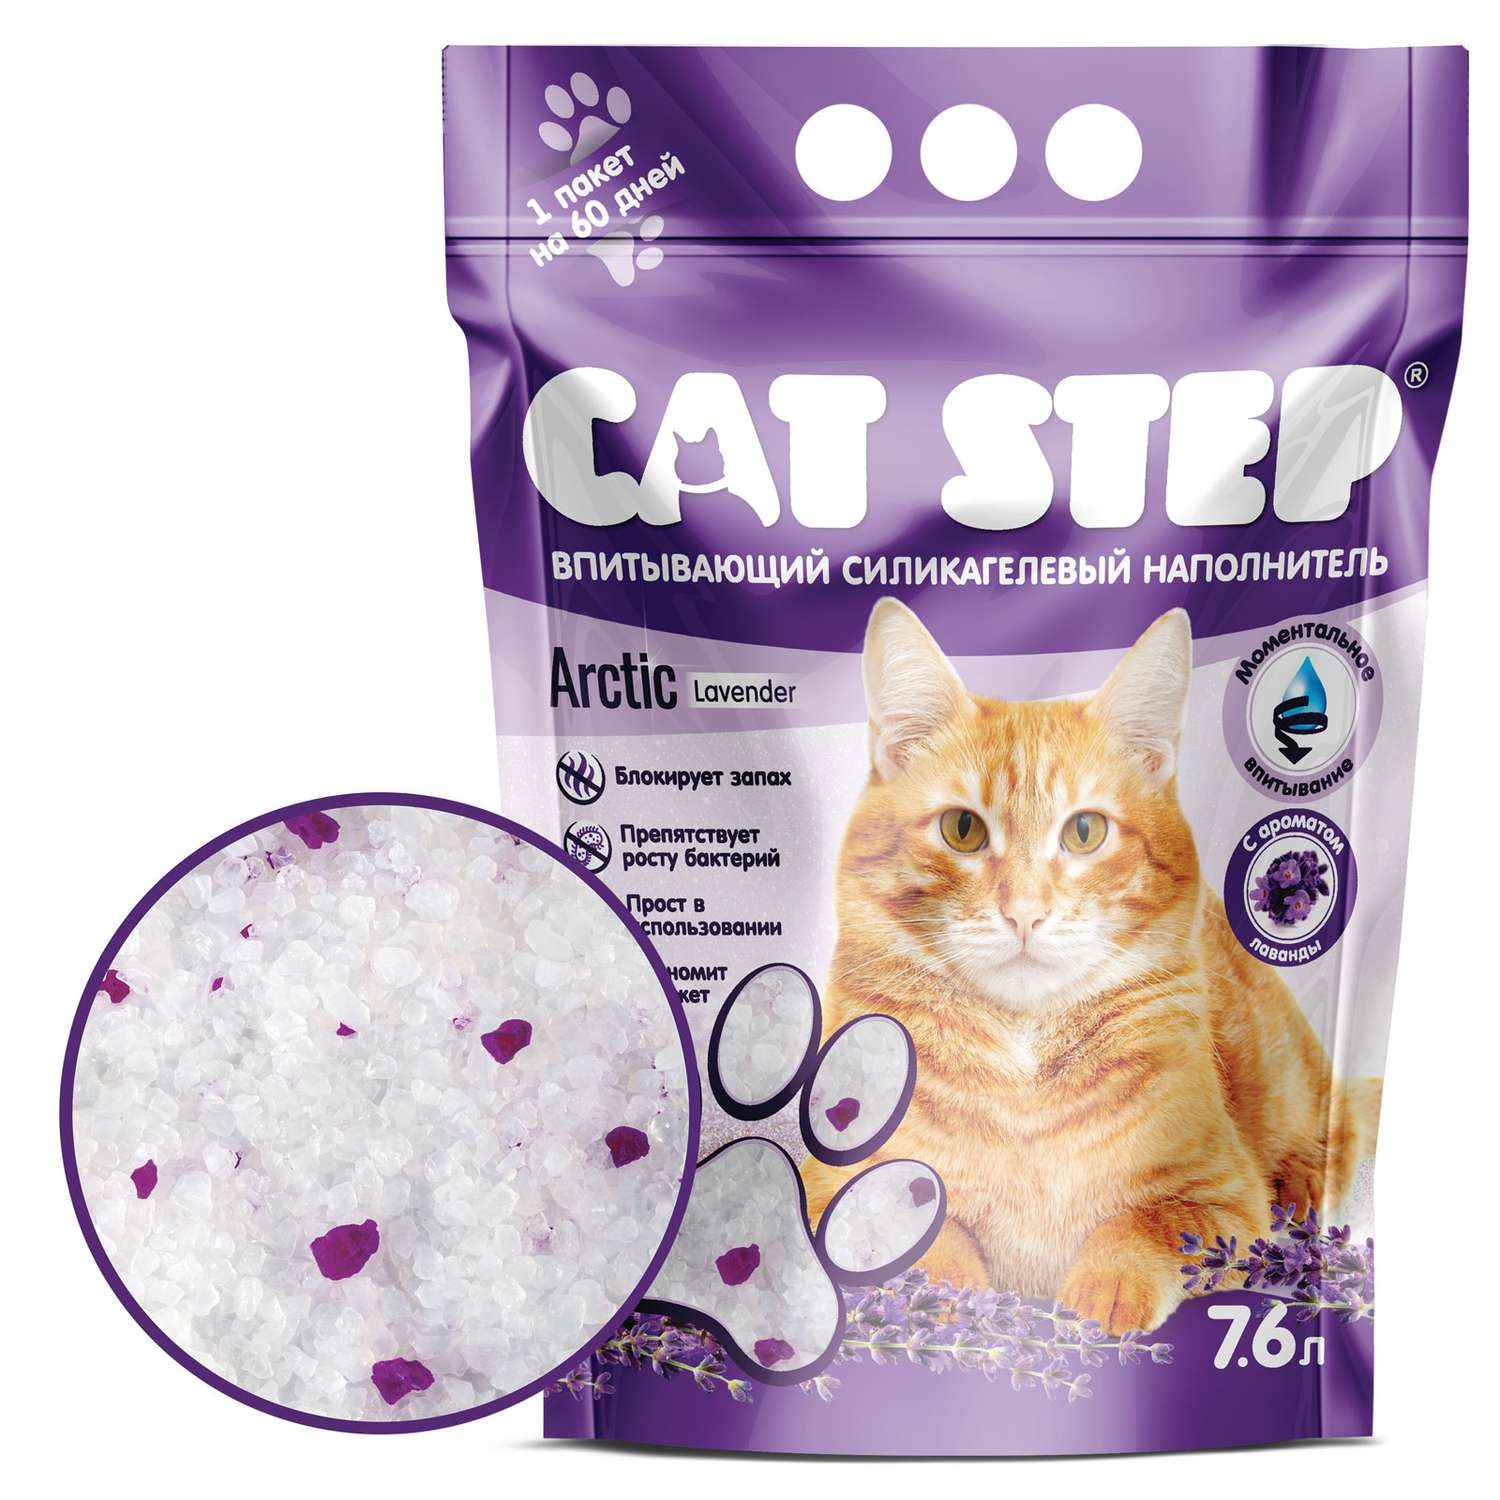 Наполнитель для кошек Cat Step Arctic Lavender впитывающий силикагелевый 7.6л - фото 1